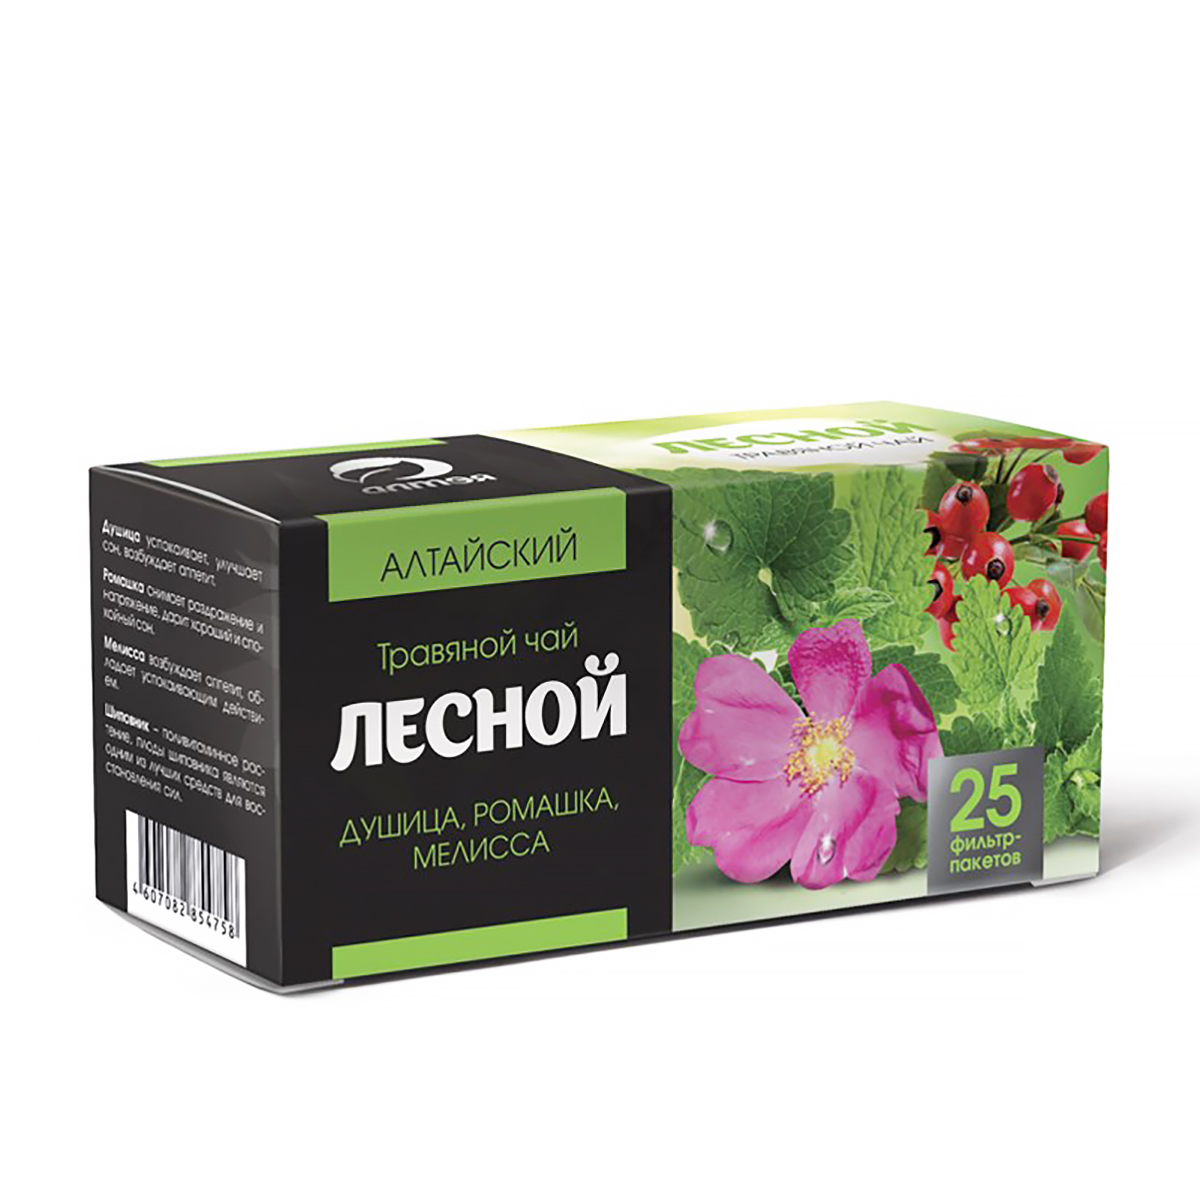 Чай травяной Лесной в фильтр-пакетах, 25 шт х 1.2 г